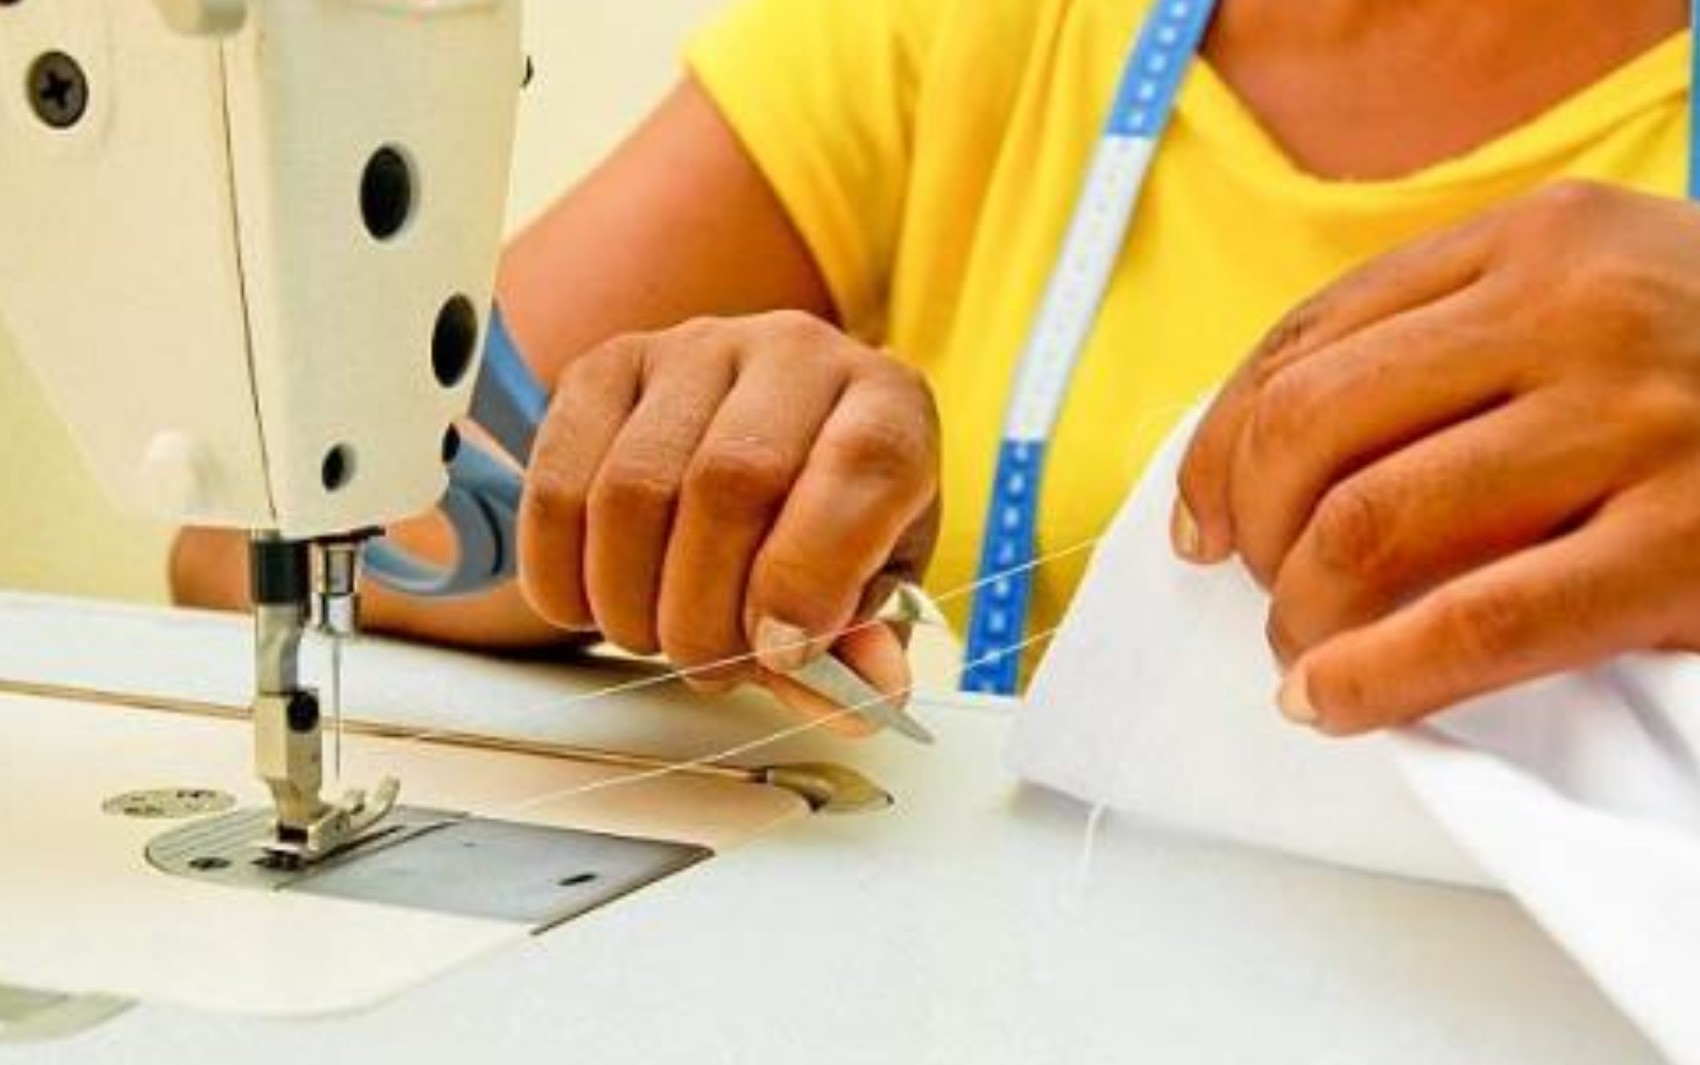 Fundo Social está com inscrições abertas para cursos de costura industrial, construção civil e costura para iniciantes em Adamantina